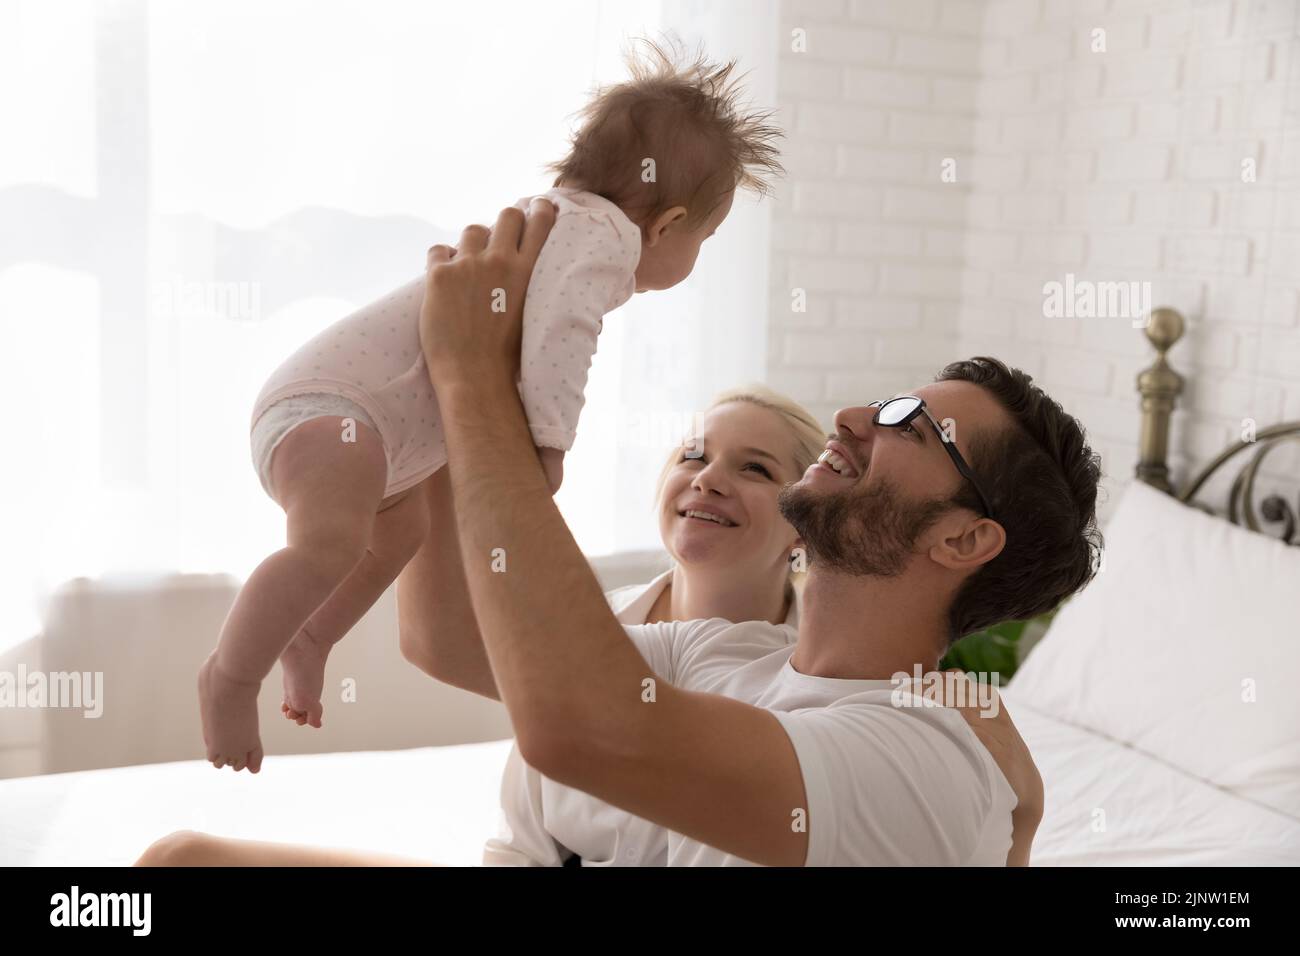 Los padres jóvenes pasan tiempo con el lindo bebé recién nacido Foto de stock